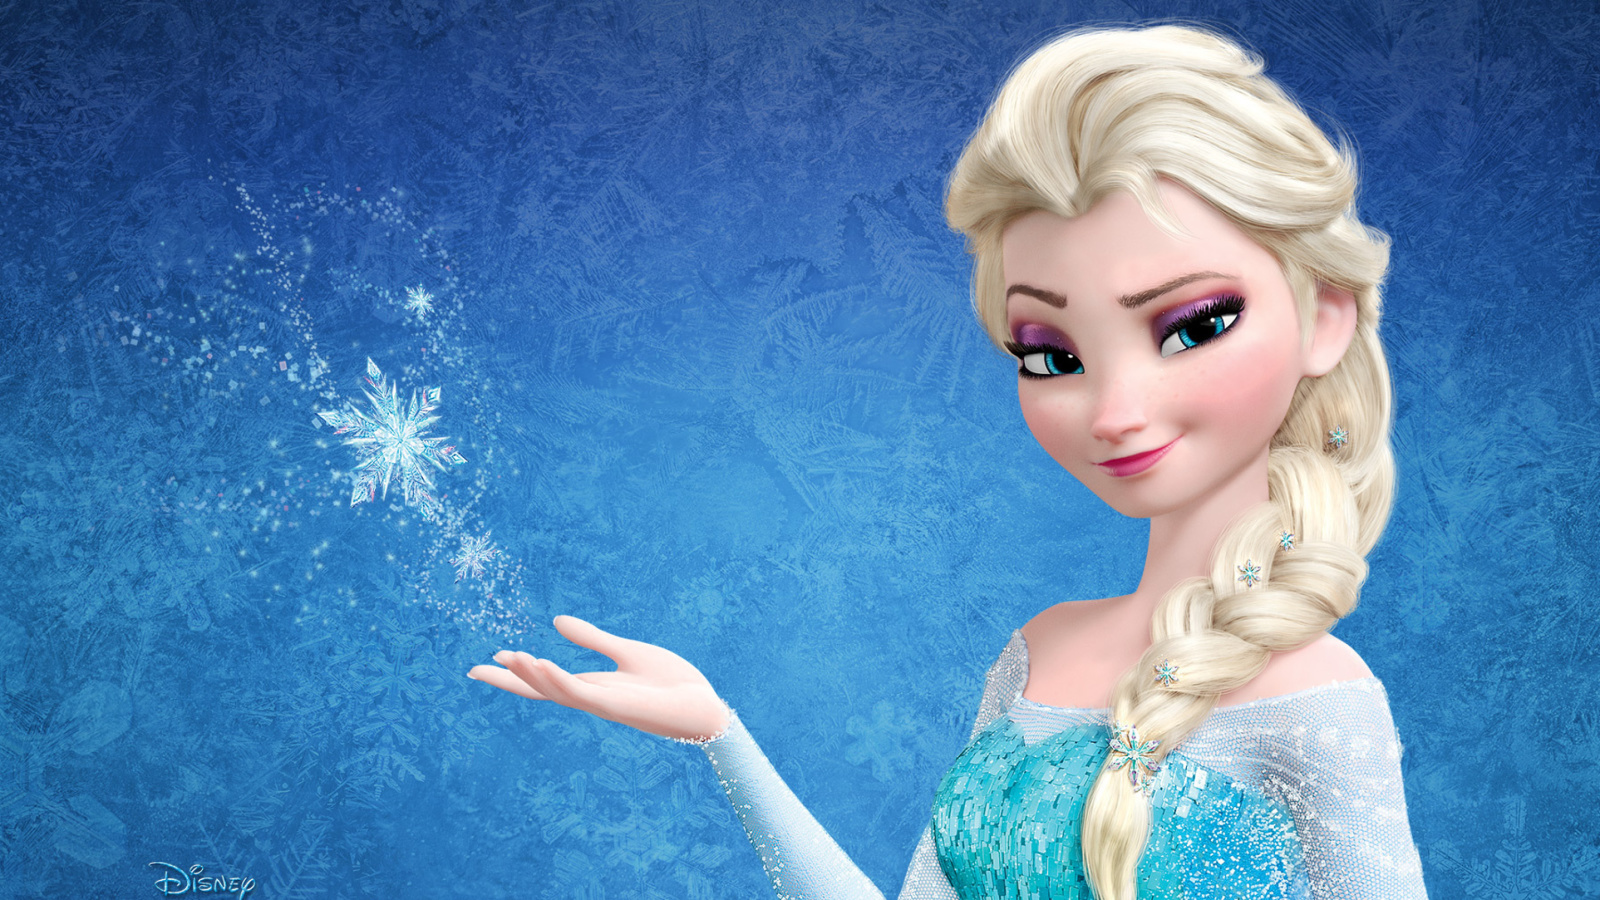 Elsa in Frozen wallpaper 1600x900